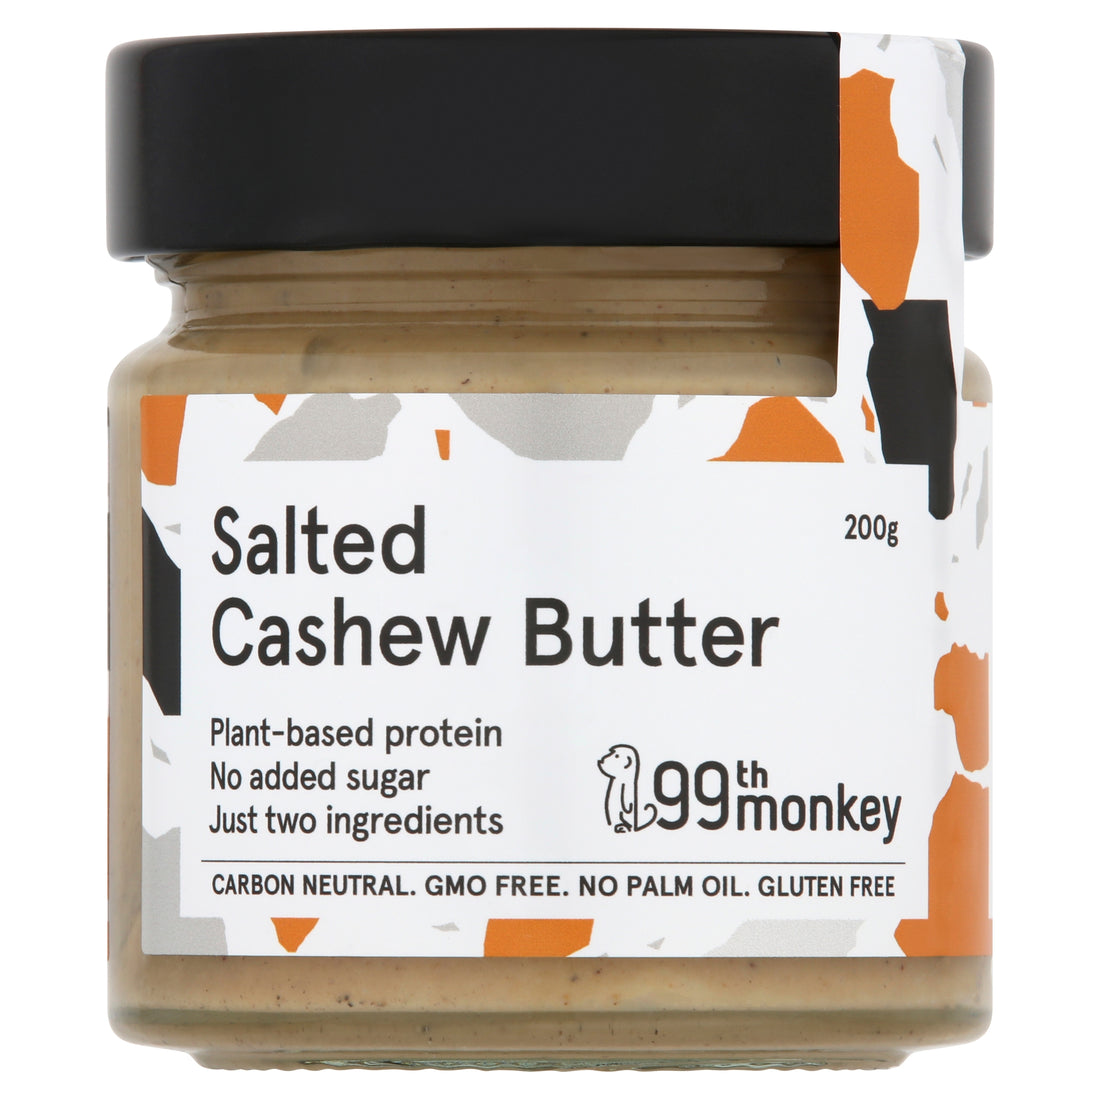 Salted Cashew Butter - 200g